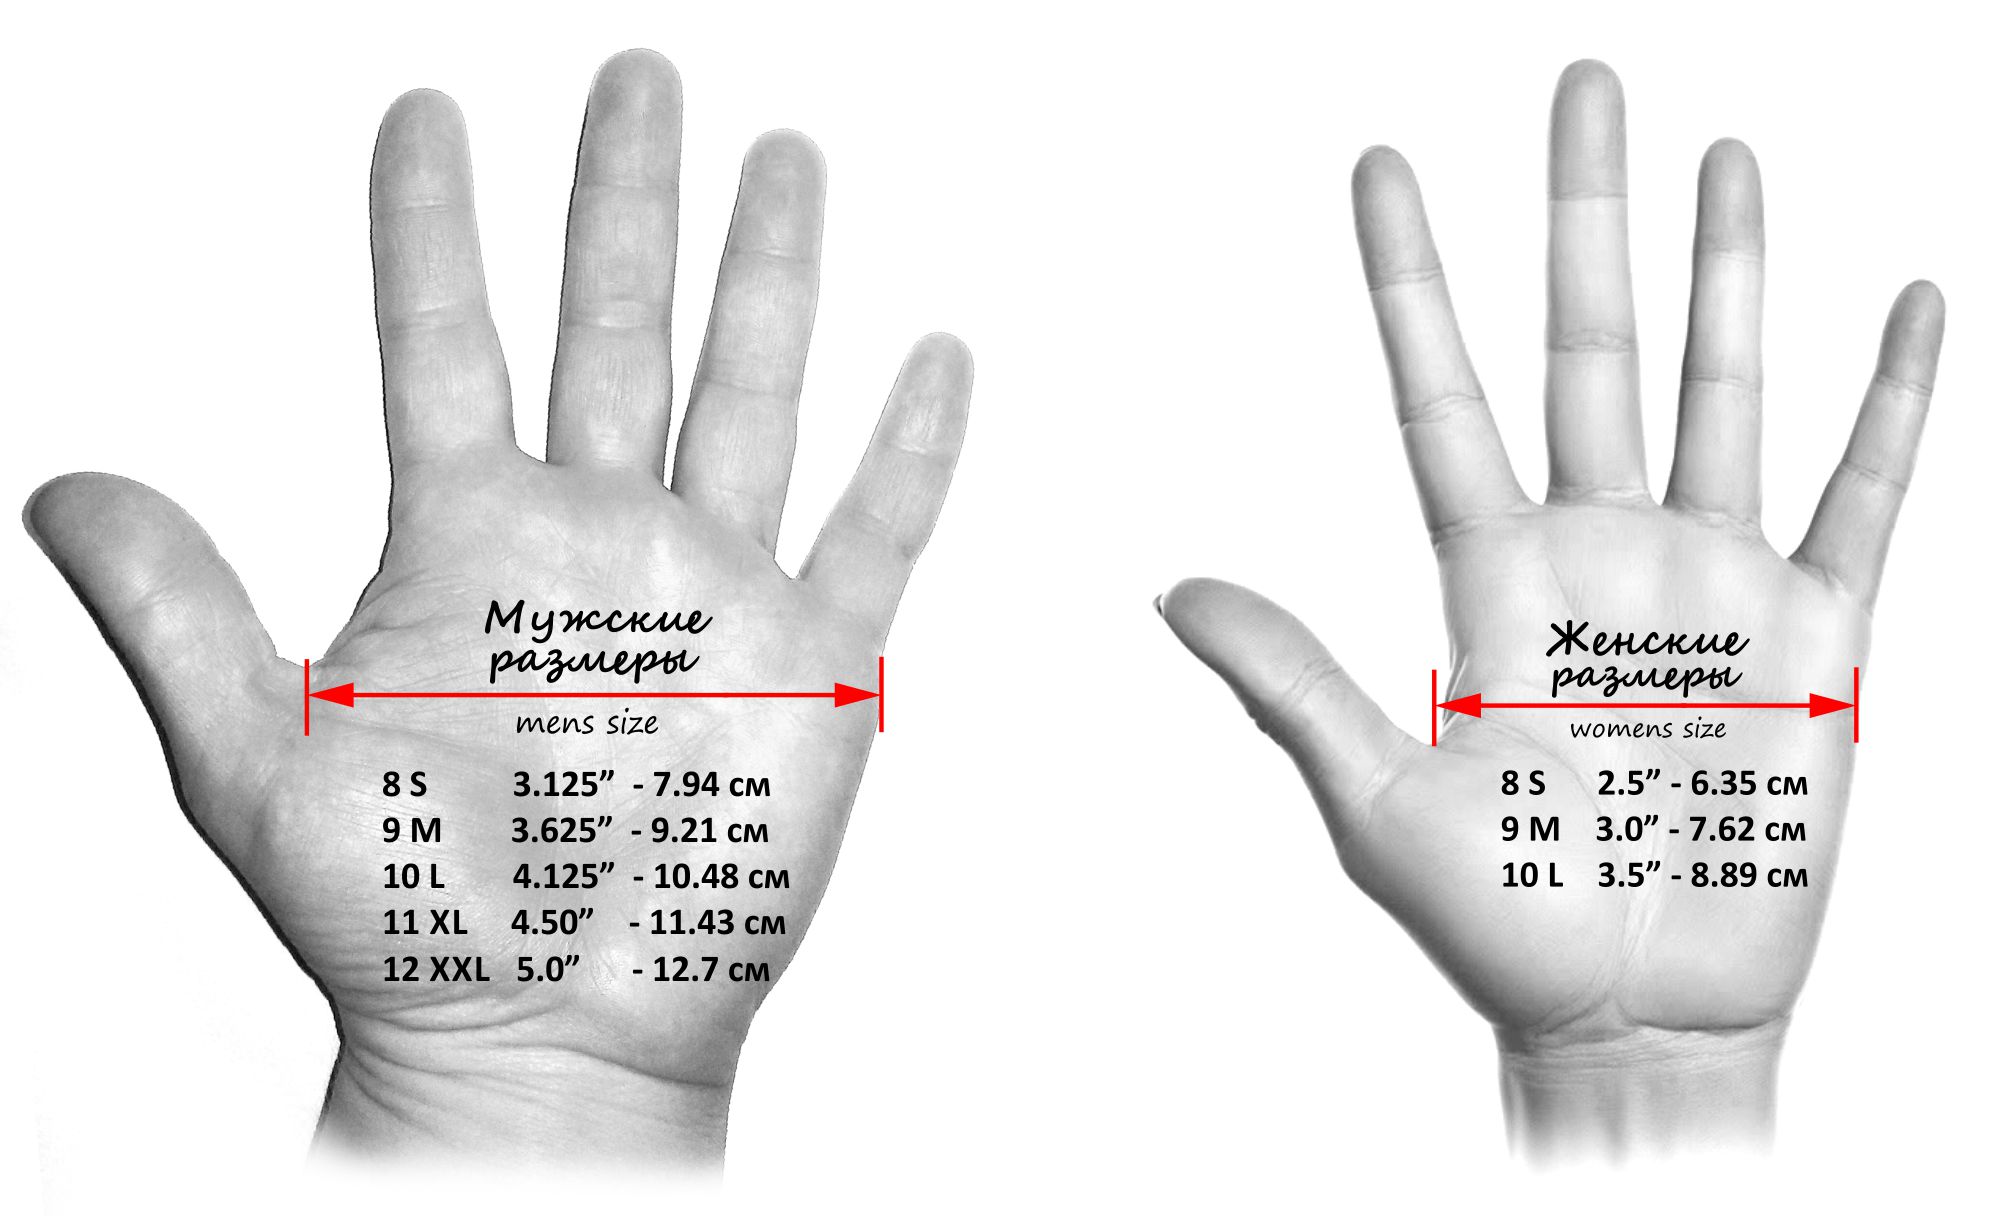 Размеры обхвата руки. Как измеряется обхват ладони для перчаток. Как правильно измерить обхват ладони для размера перчатки. Как узнать свой размер руки для перчаток. Как понять размер руки для перчатки.